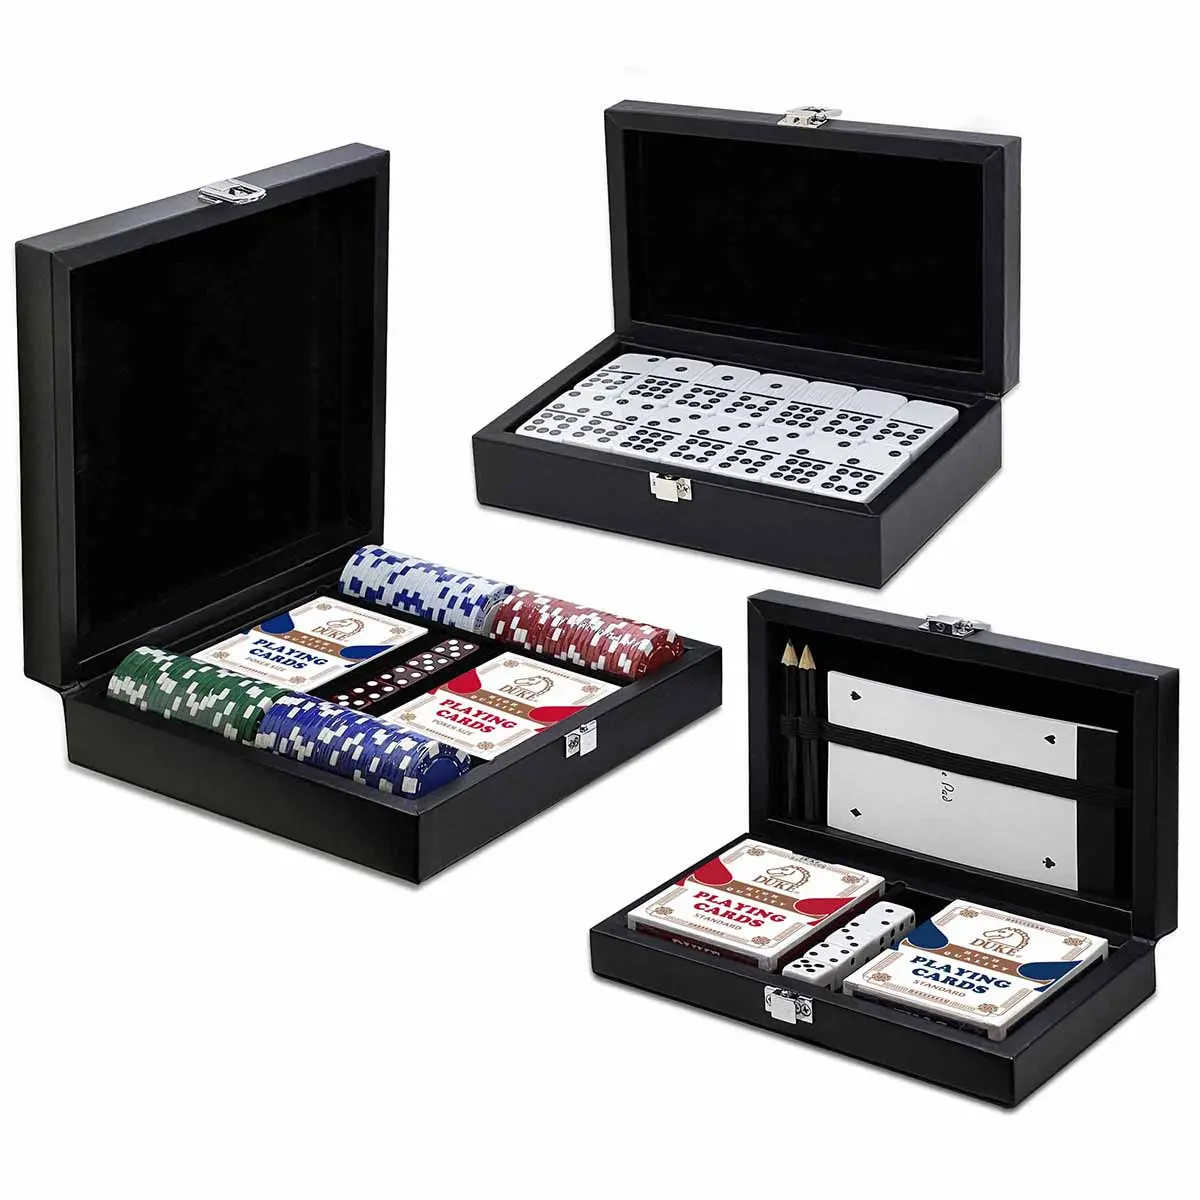 Colección de juegos de mesa Muti en negro mate